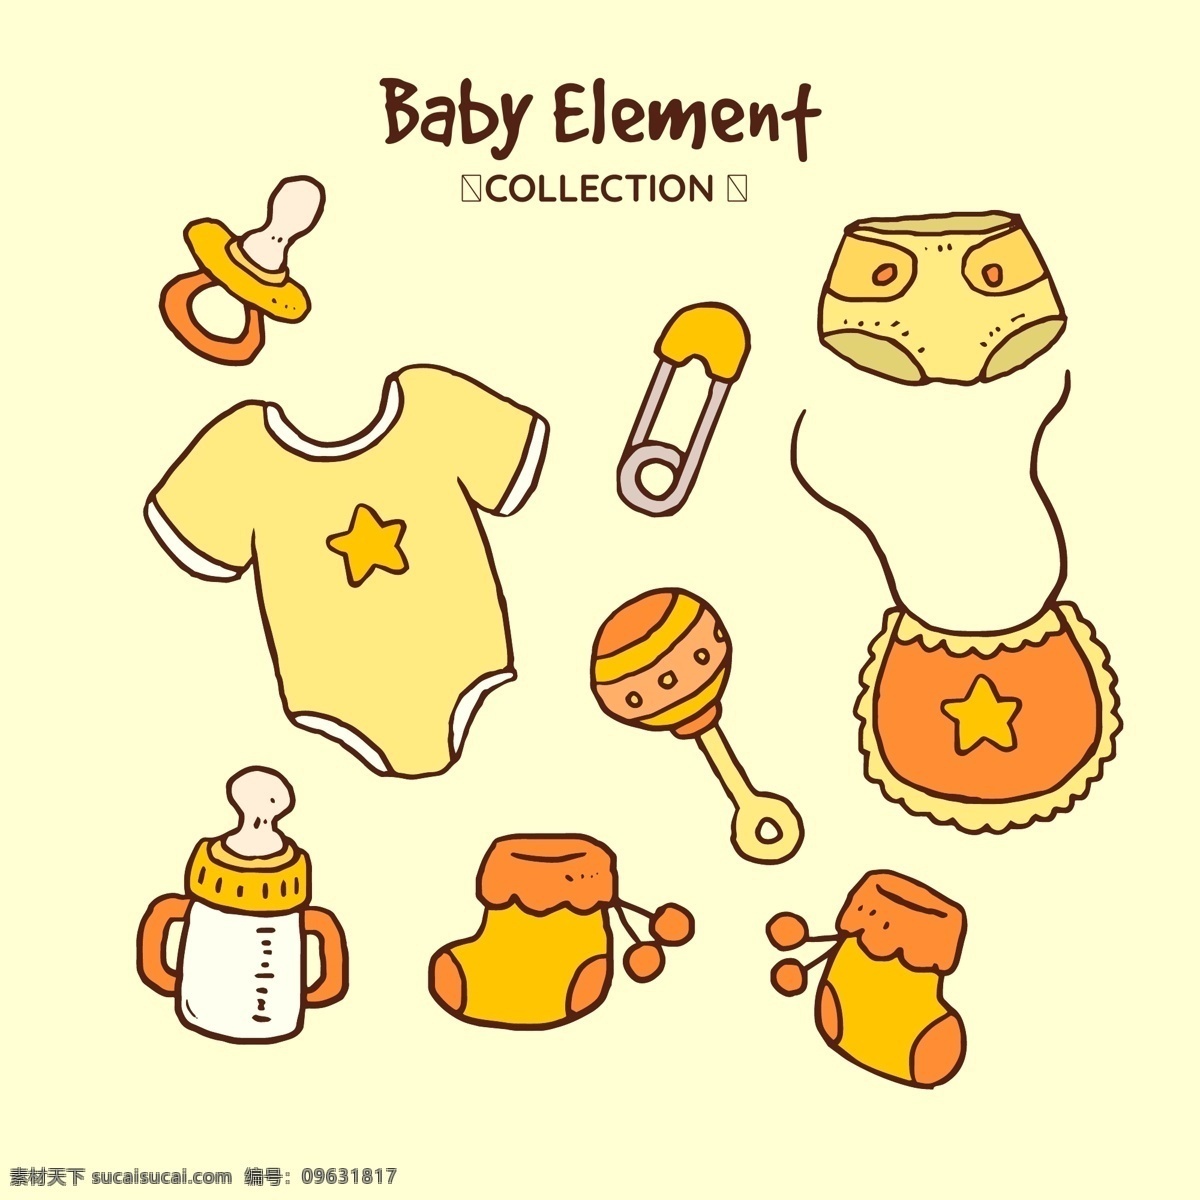 婴儿元素相关 新生儿 宝宝 幼儿 母婴 满月 手绘 卡通 可爱 奶瓶 小黄鸭 玩具 衣服 摇铃 尿不湿 围嘴 围兜 奶嘴